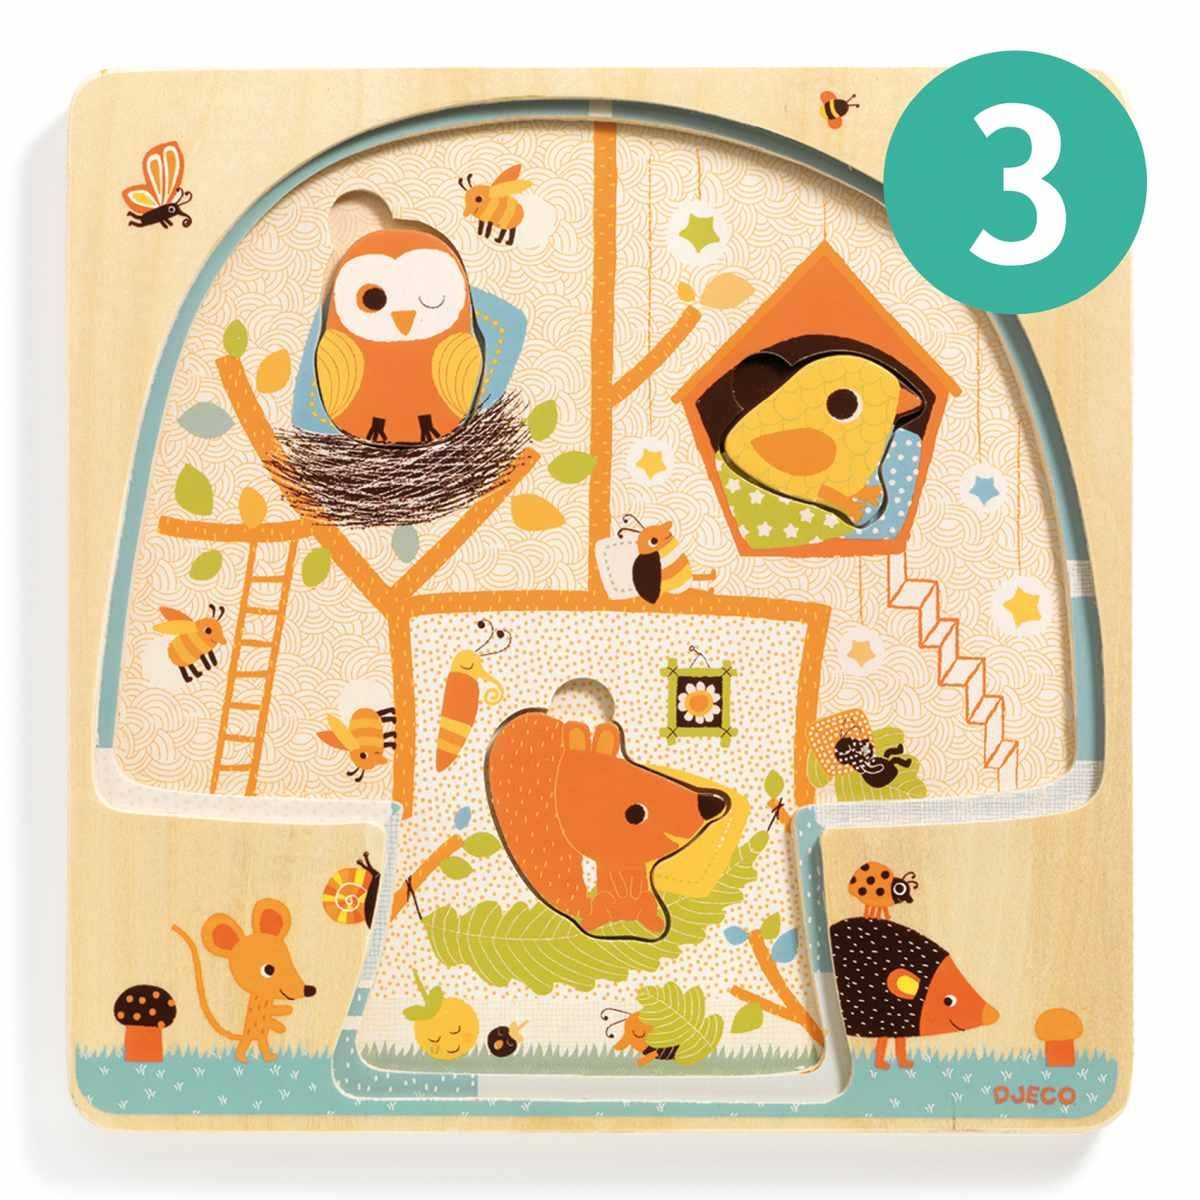 Das 3-Ebenen-Puzzle Chez-Nut ist ein 12-teiliges Holzpuzzle. Jede Ebene umfasst ein Puzzle mit mehreren zusammenzusetzenden Teilen. Je mehr Teile das Kind einsetzt, desto besser erkennt es das Leben der Tiere im Baum.